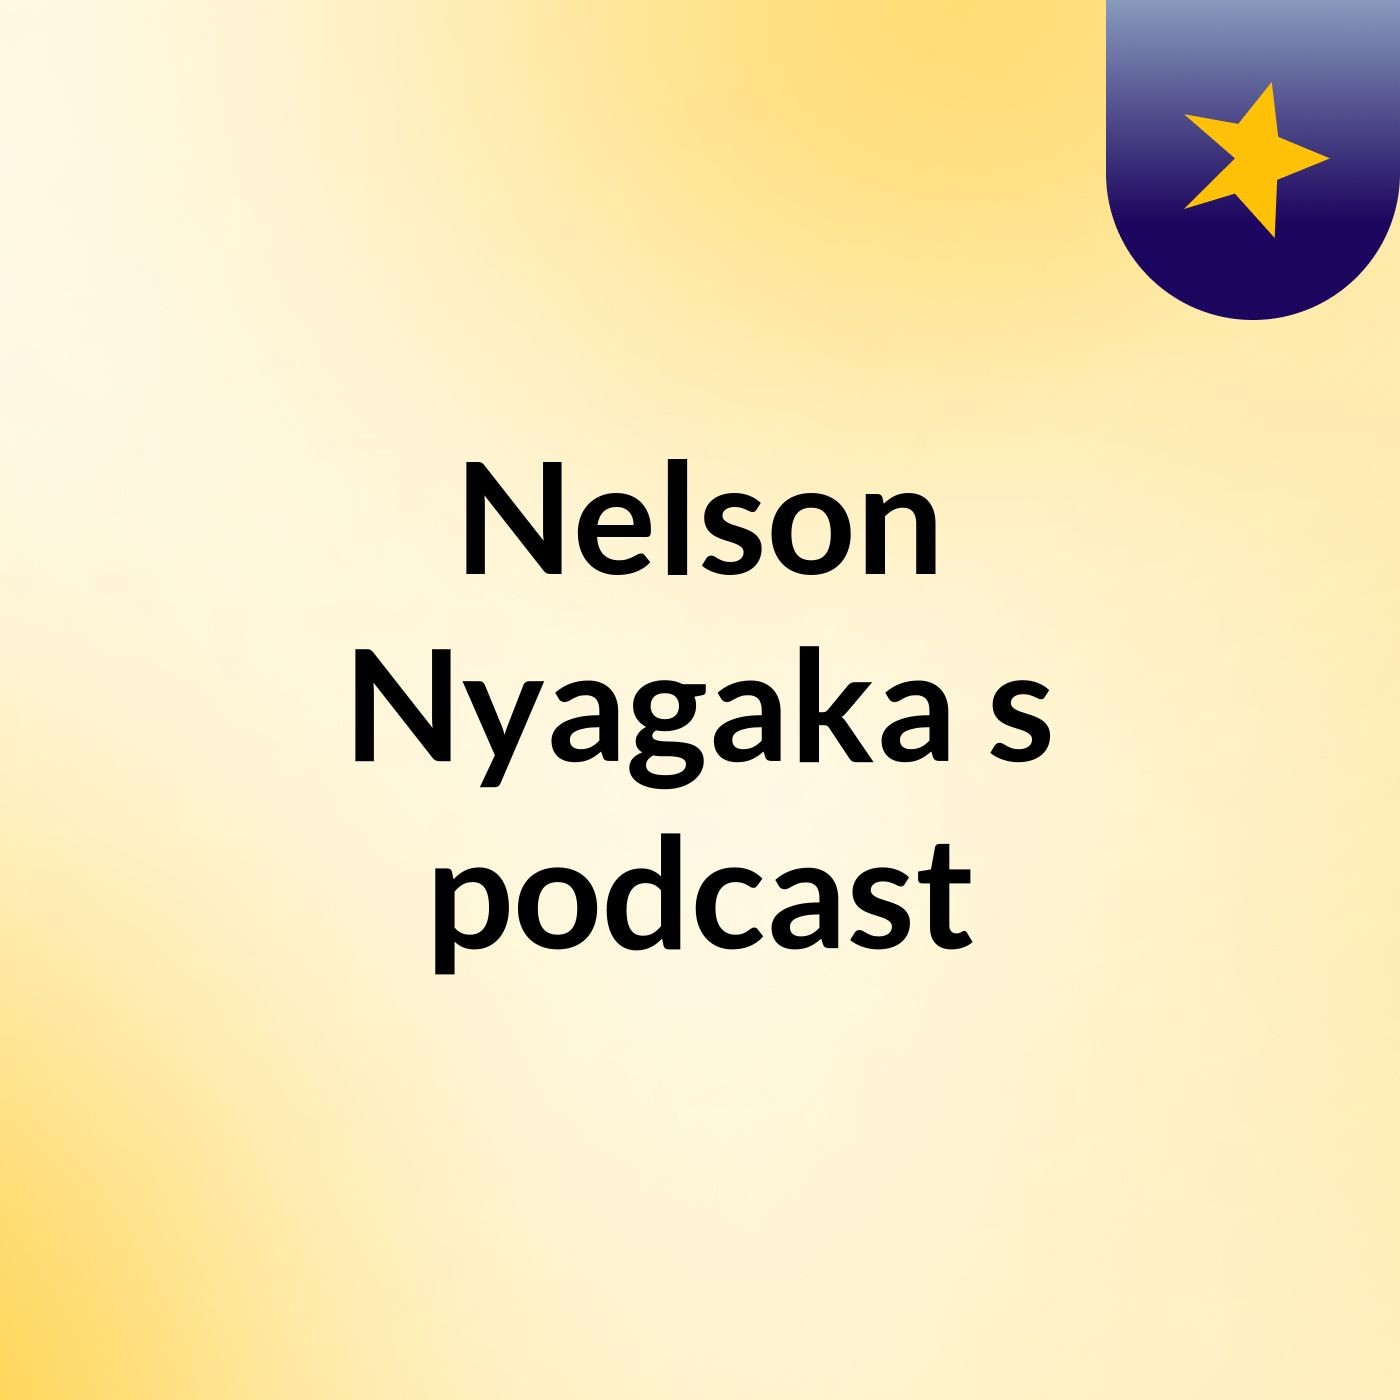 Nelson Nyagaka's podcast